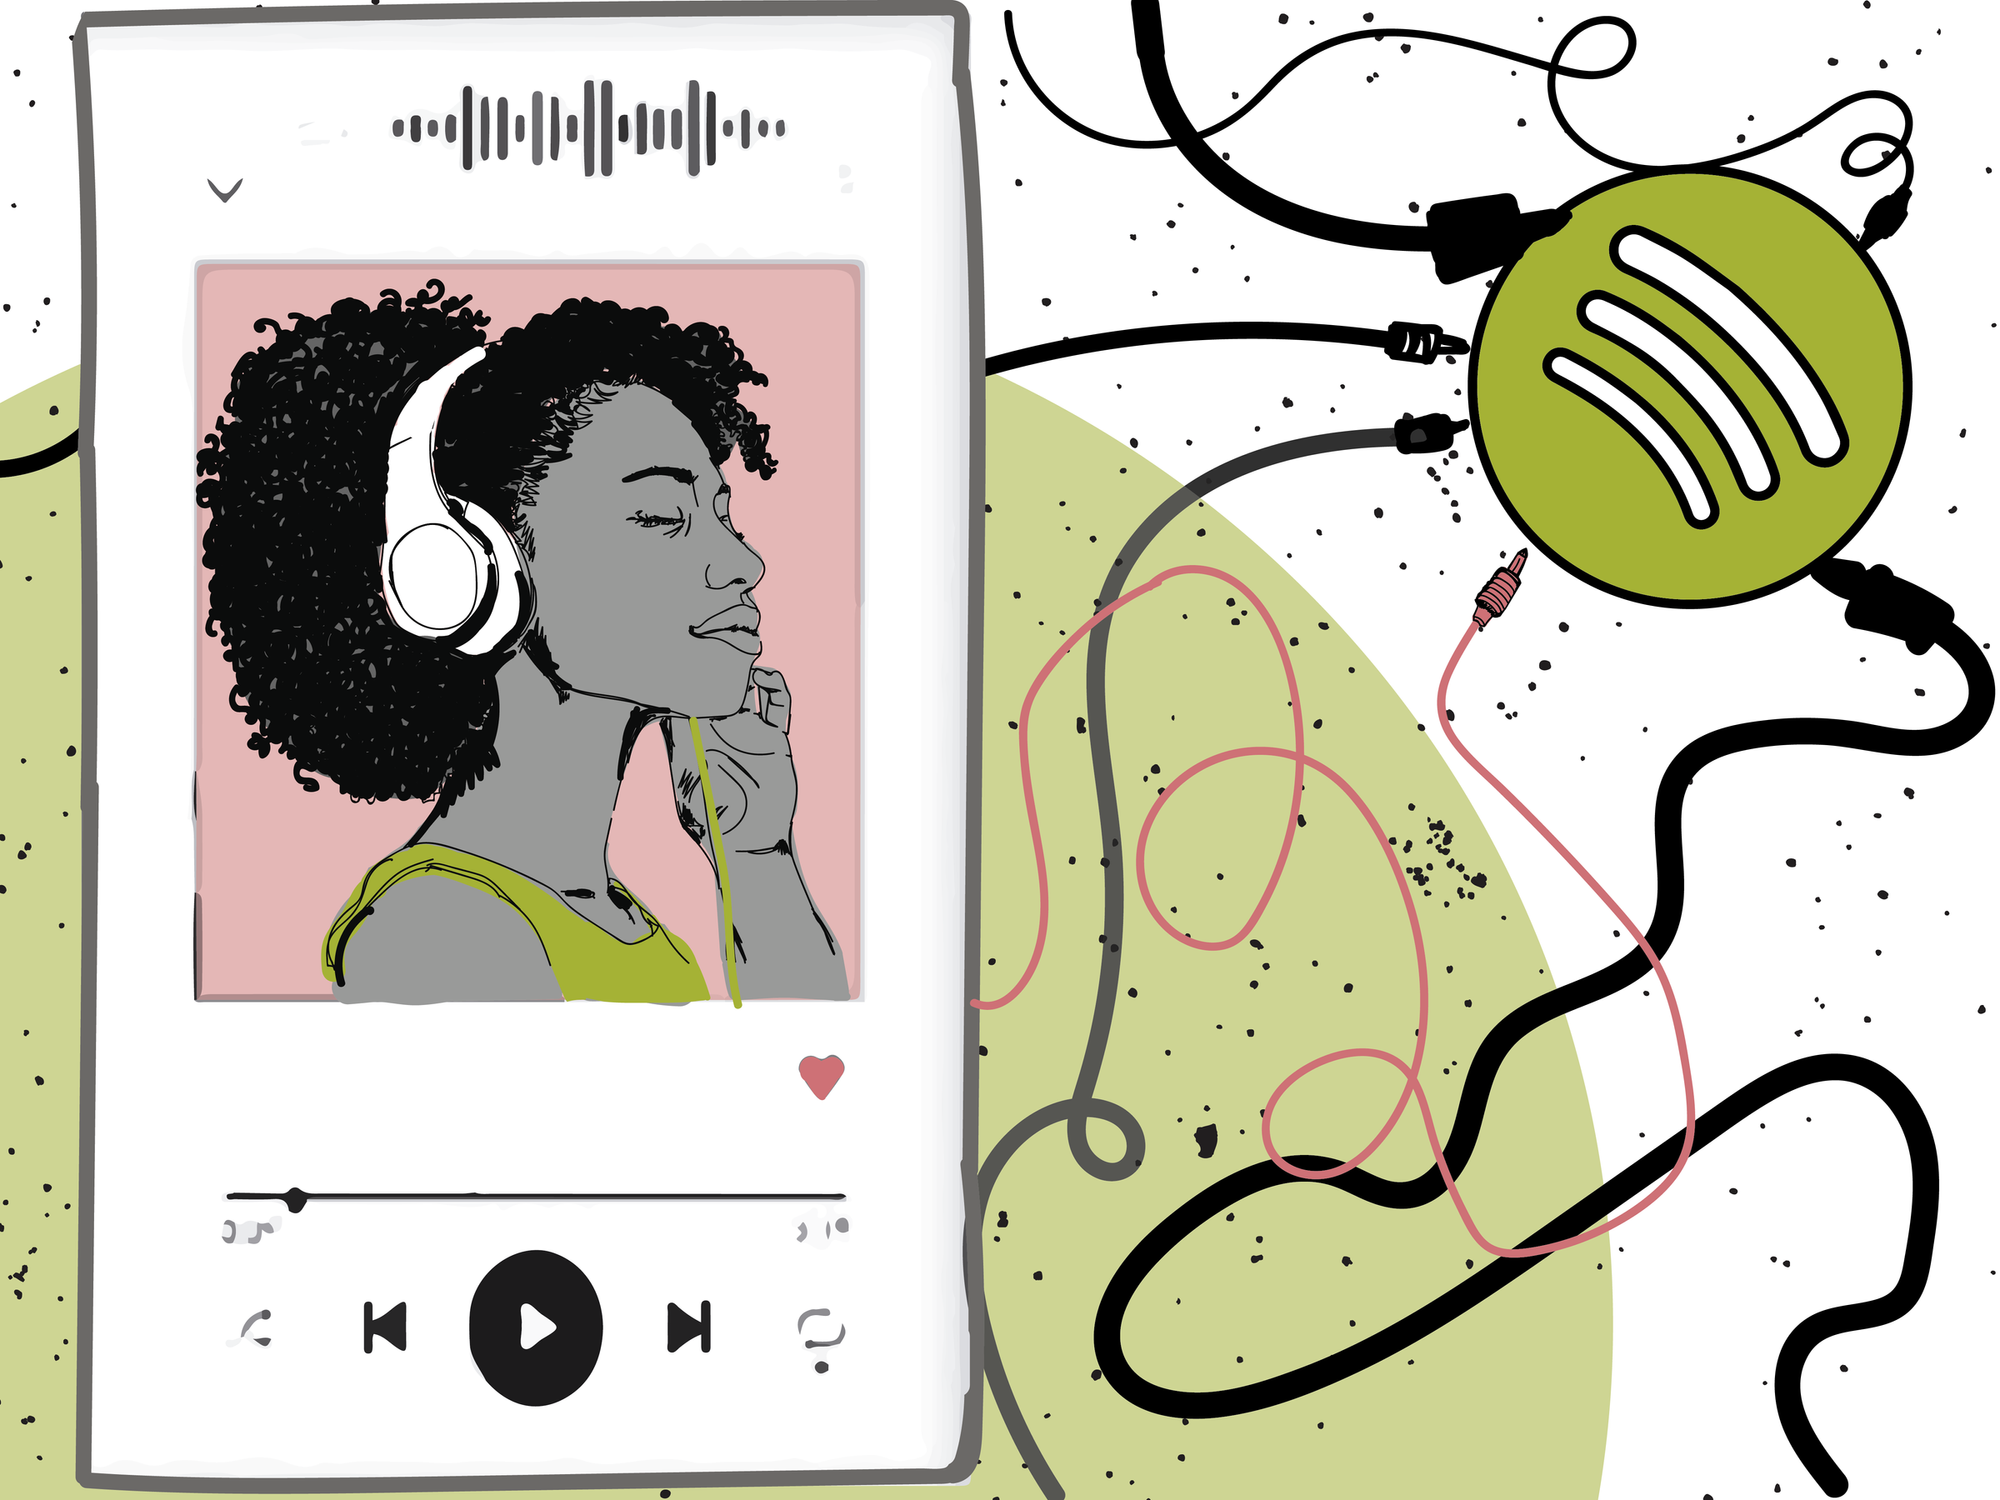 Spotify separa podcasts de músicas em tela inicial do app